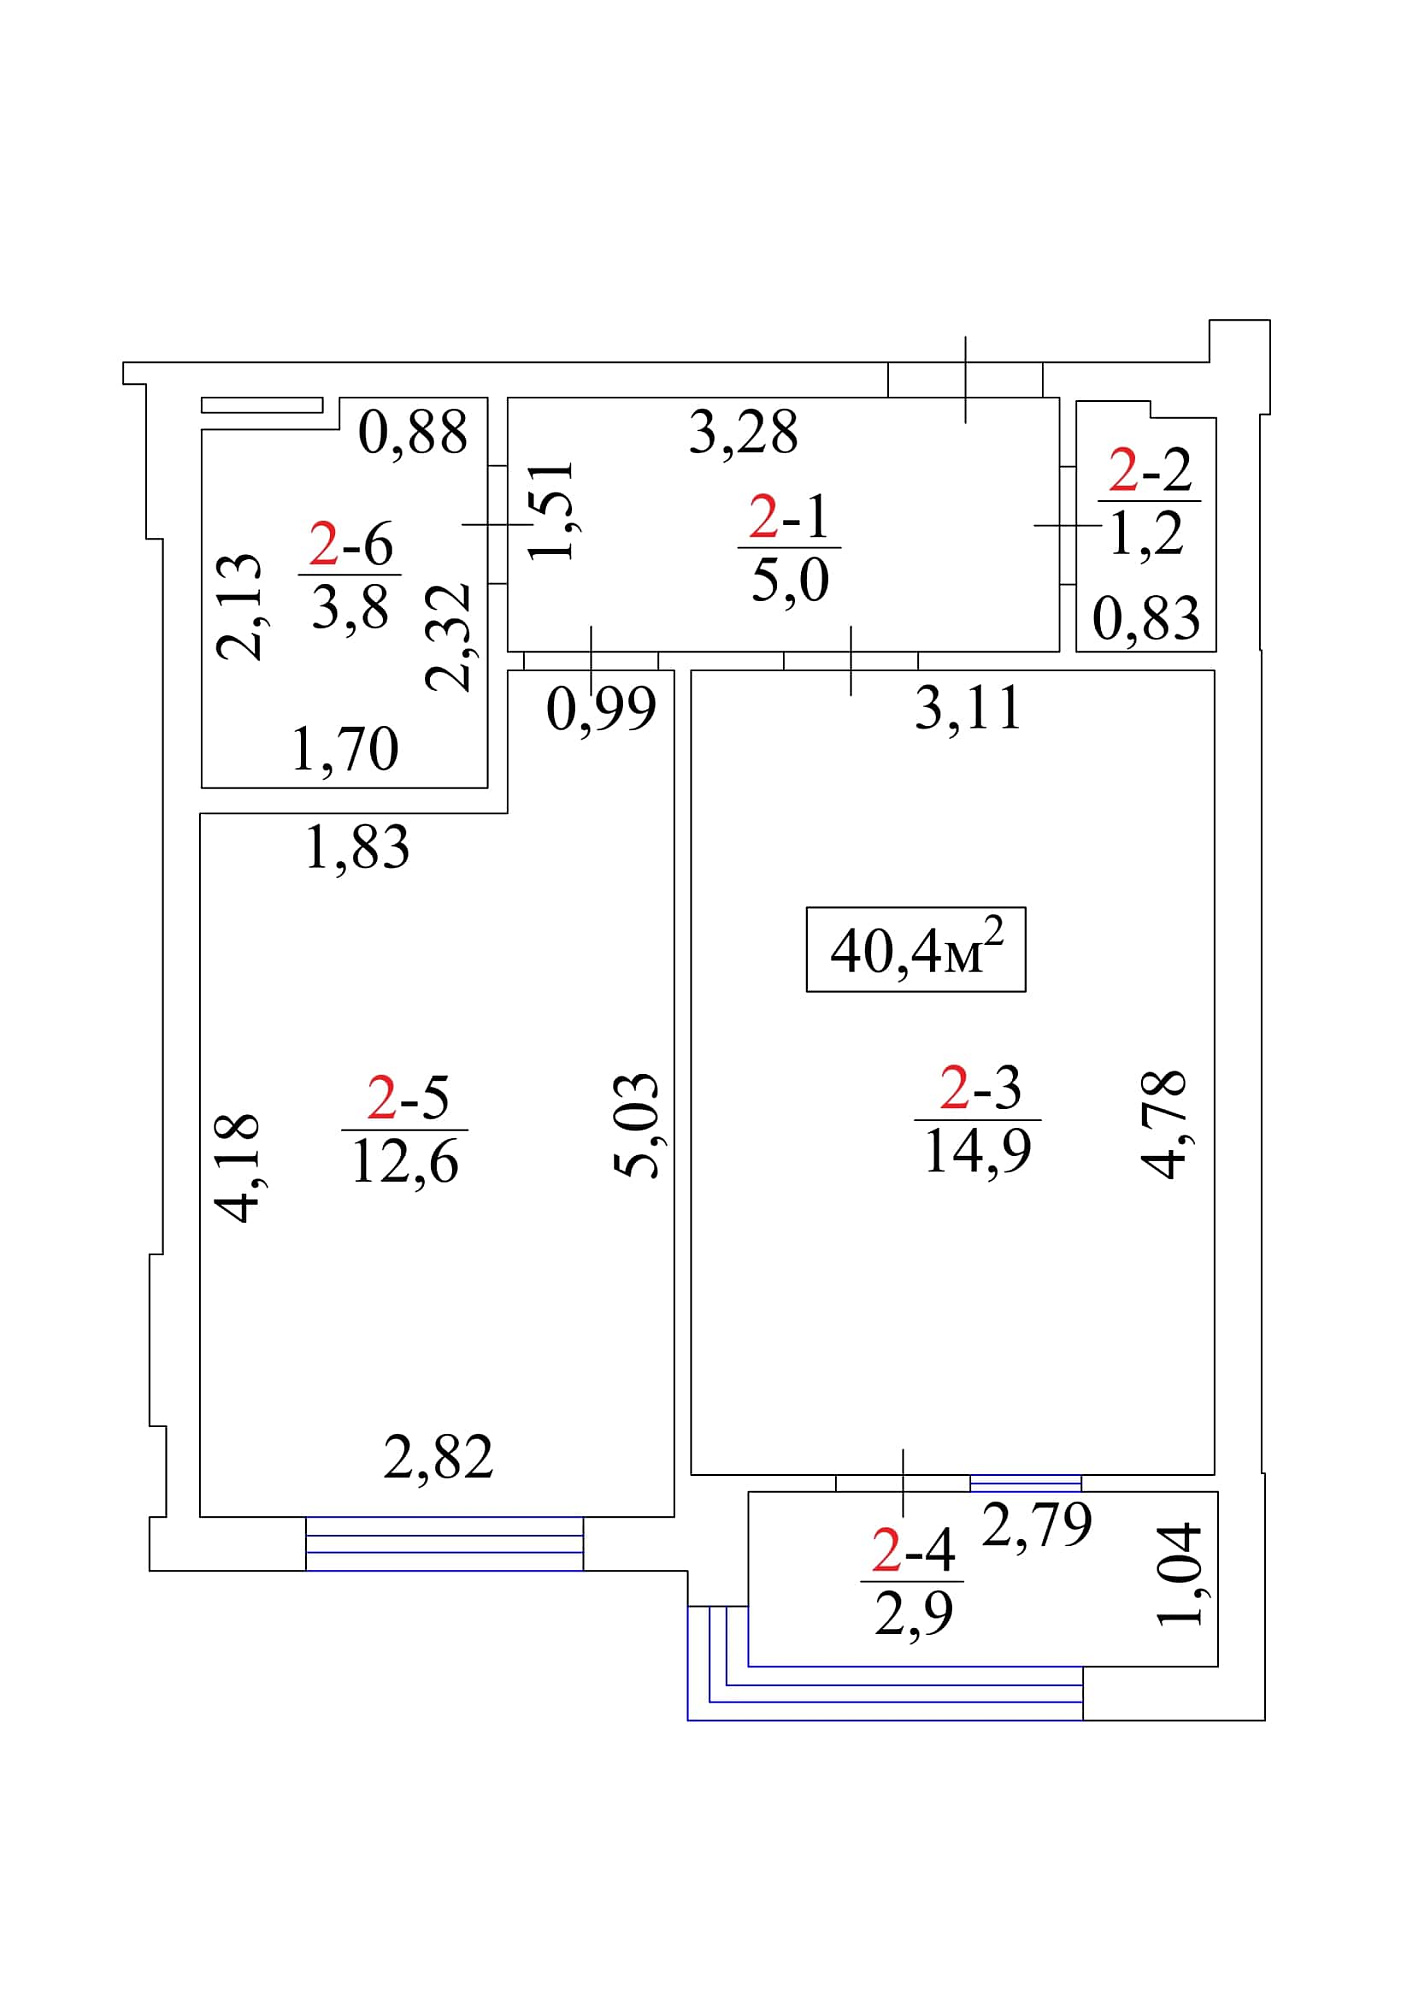 Планировка 1-к квартира площей 40.4м2, AB-01-01/00002.